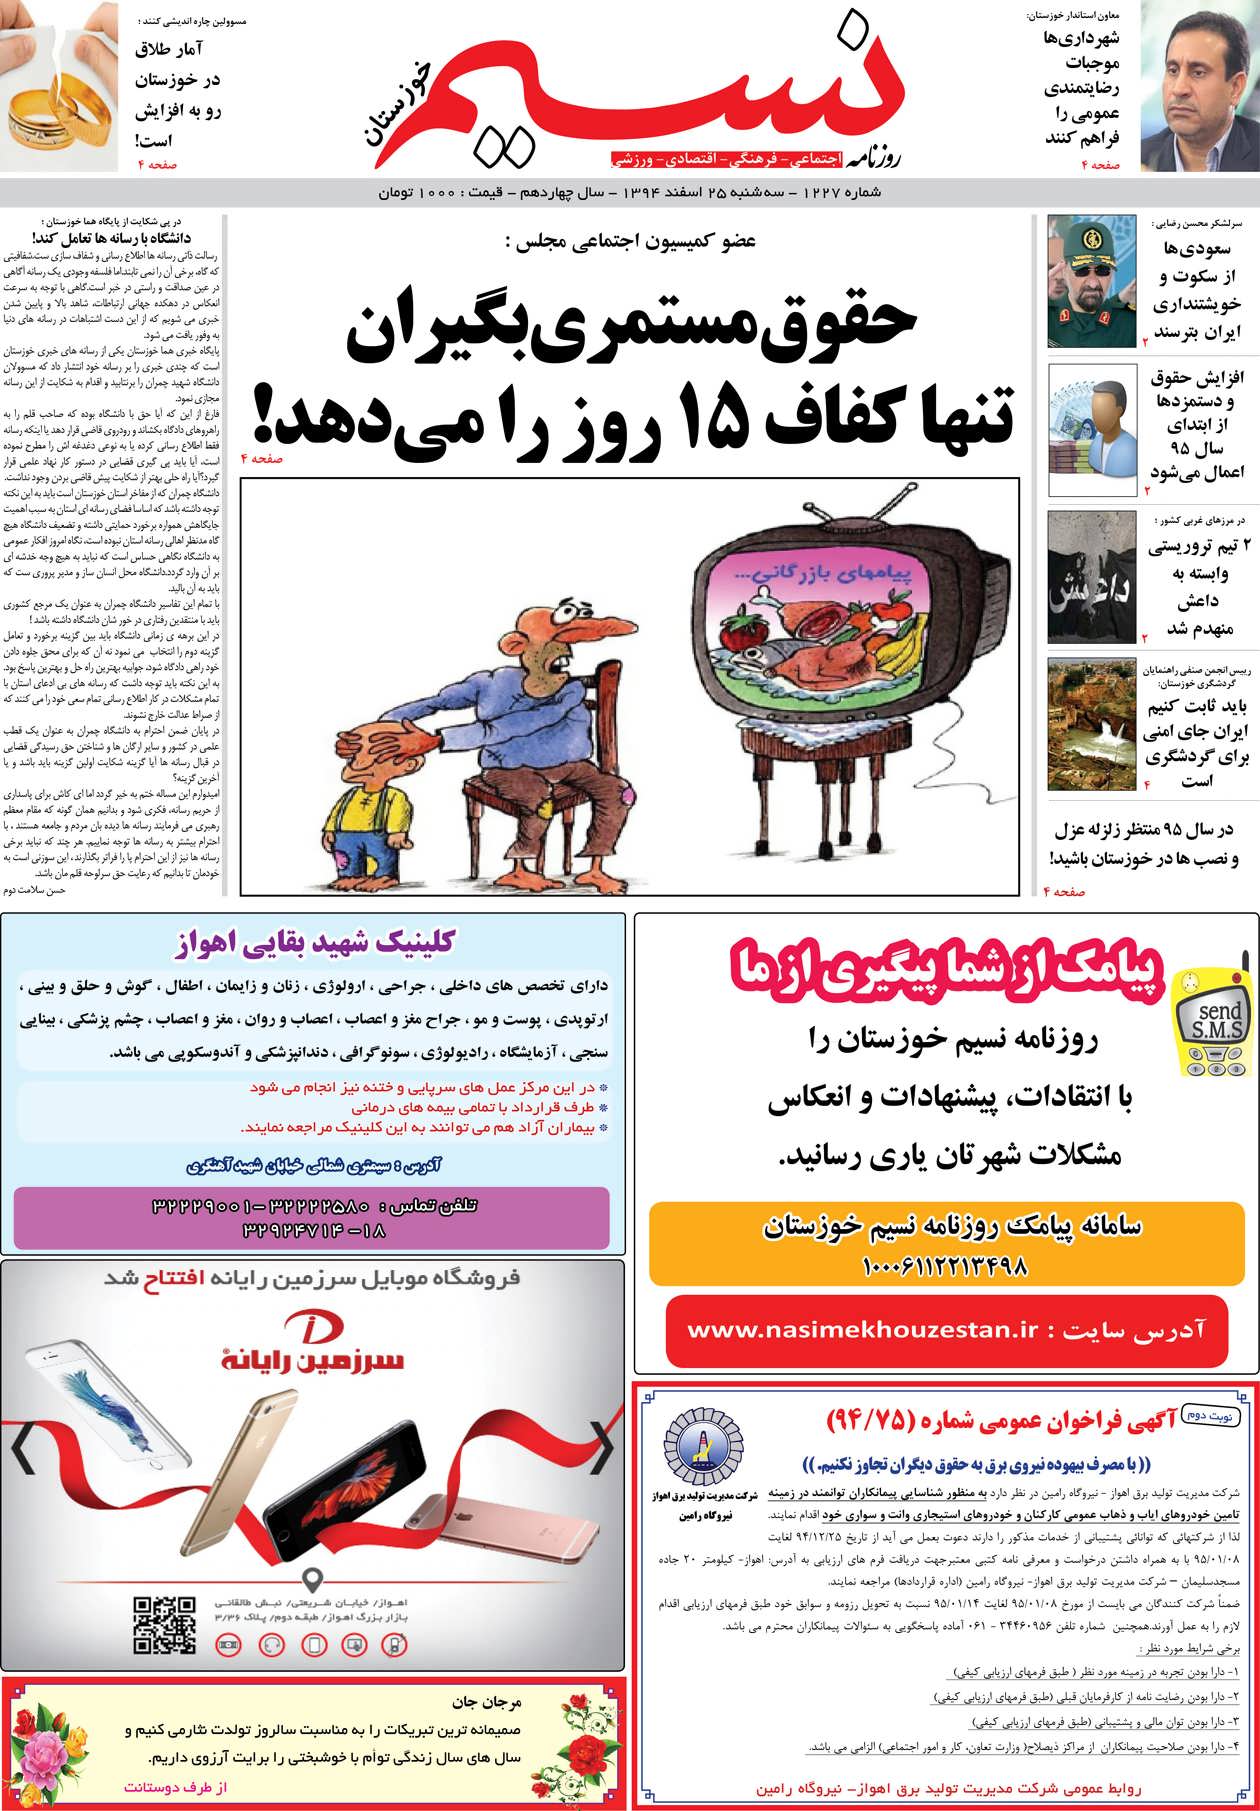 صفحه اصلی روزنامه نسیم شماره 1227